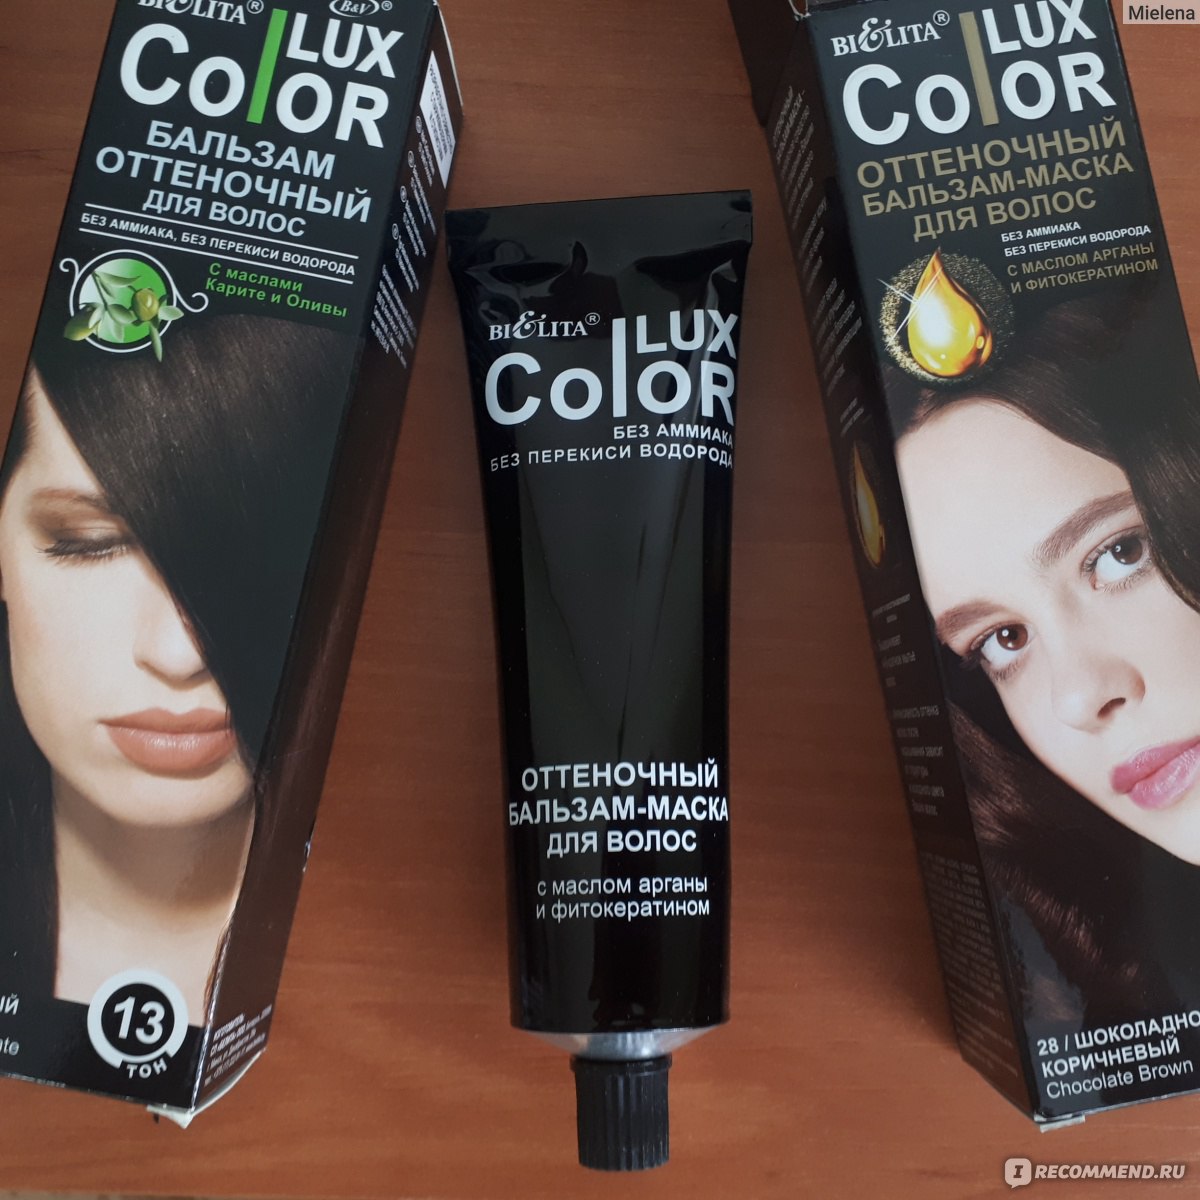 Белорусская косметика краска для волос богема